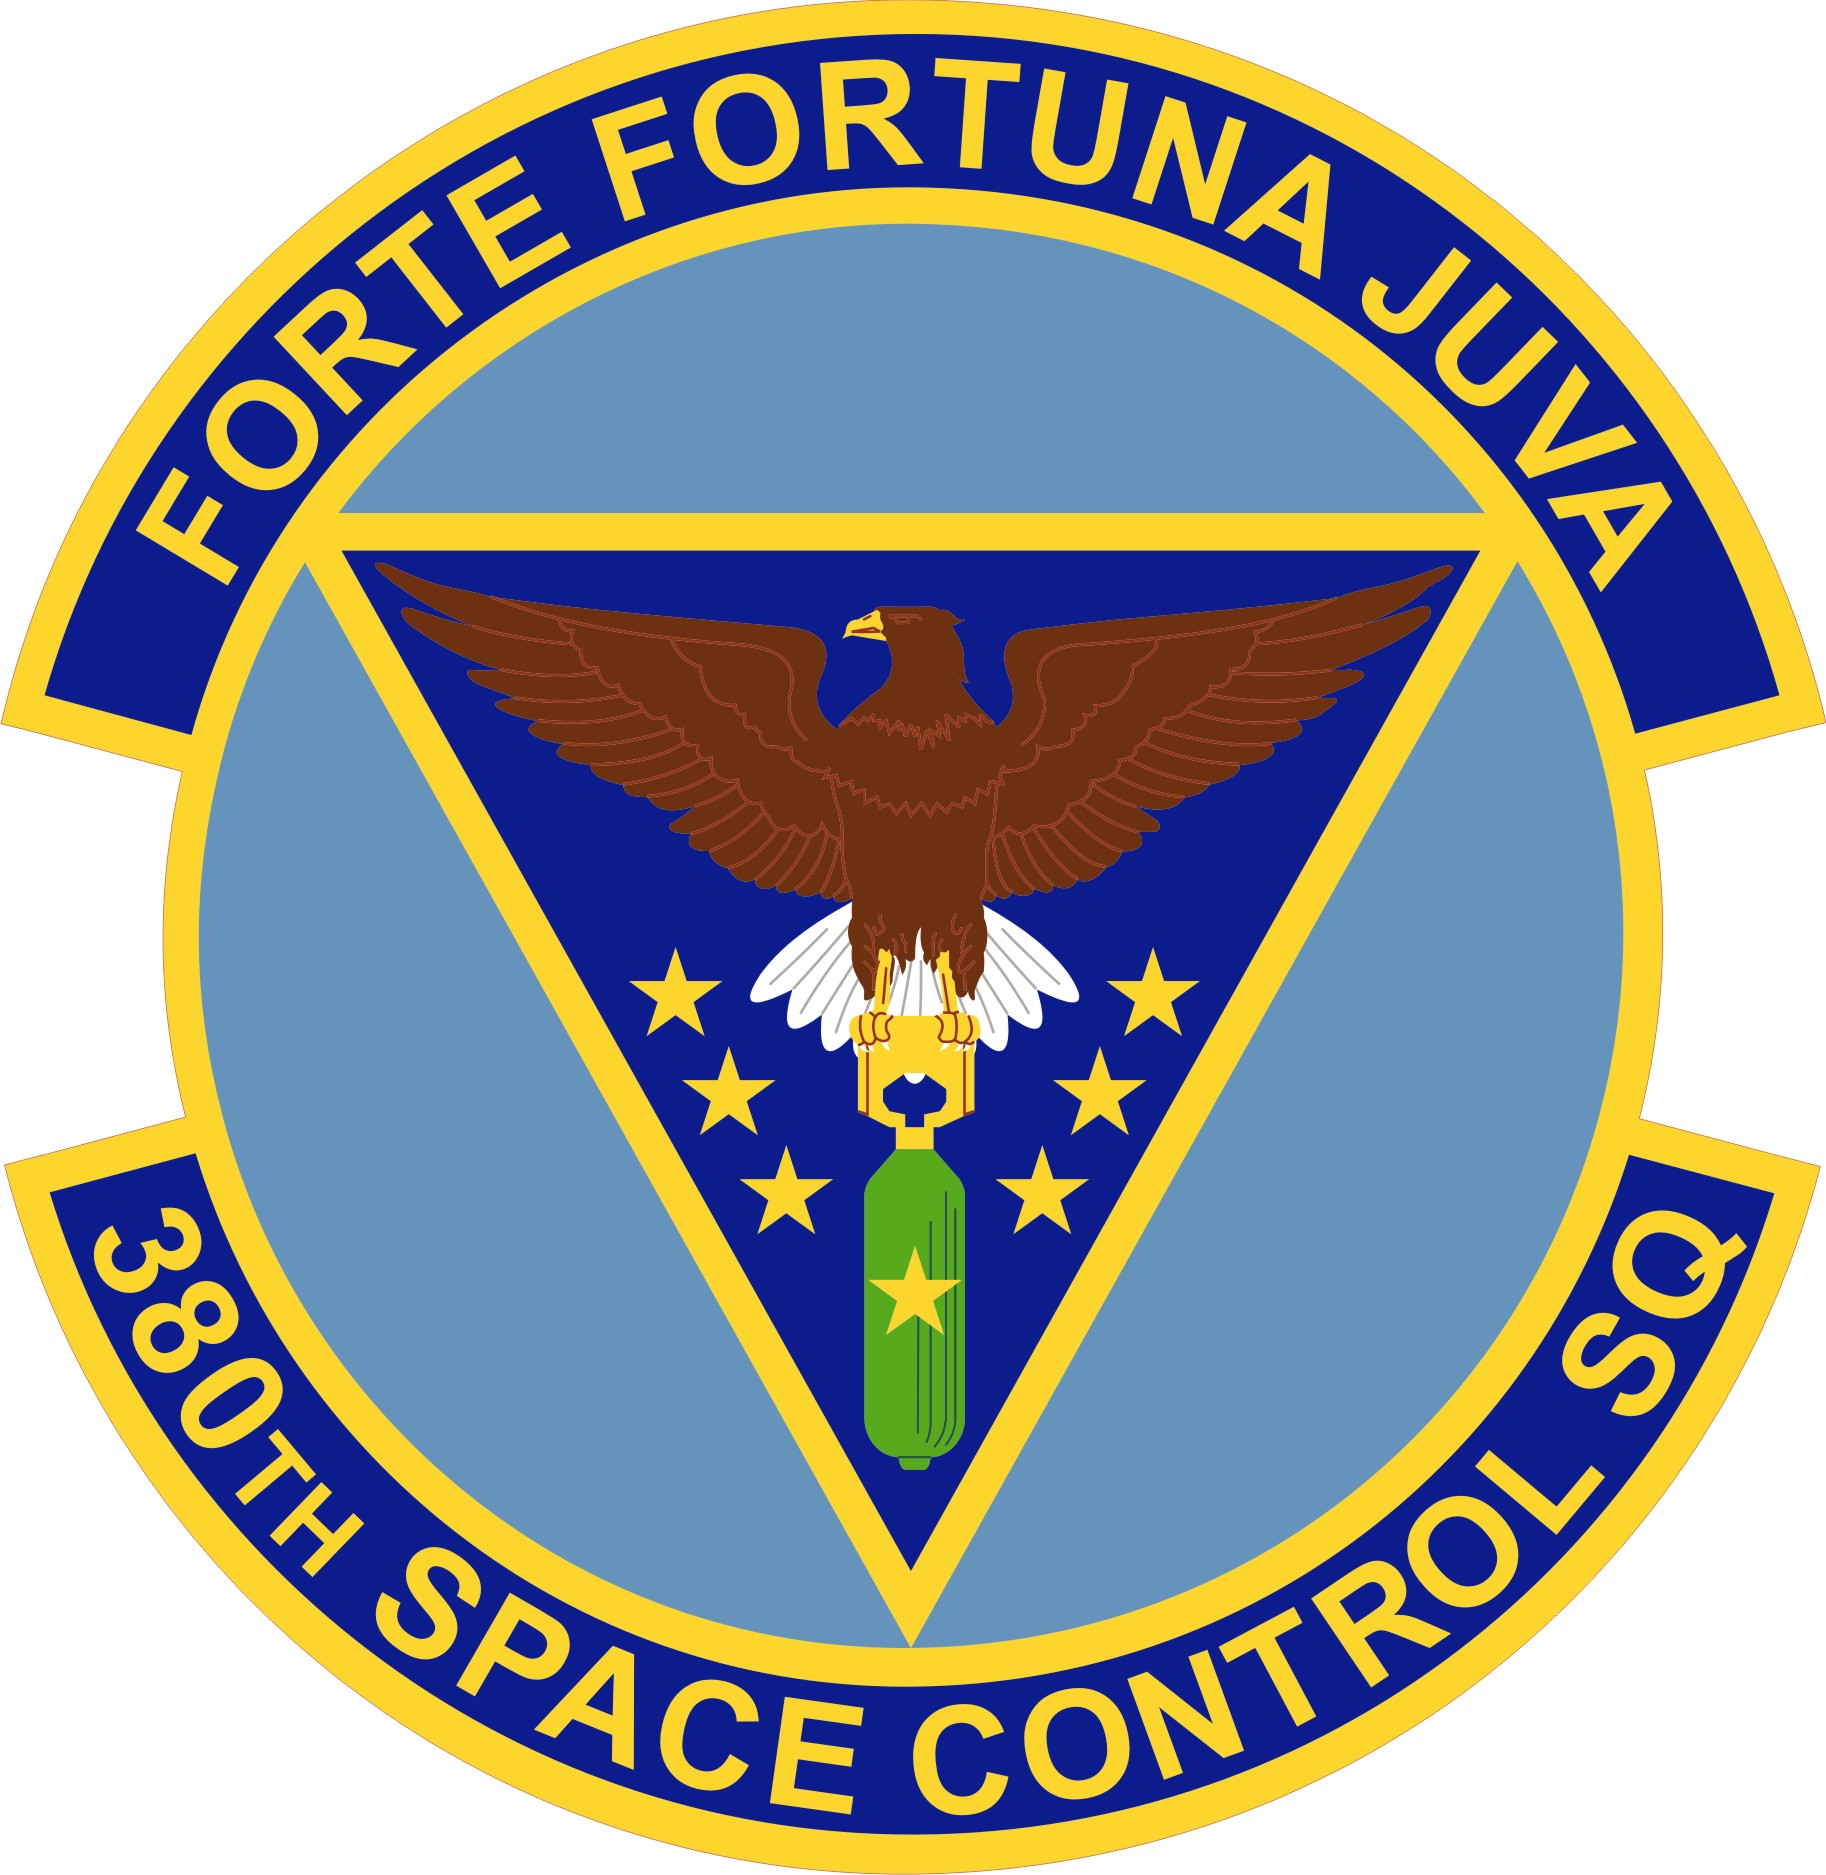 380 Space Control Squadron emblem1826 x 1875